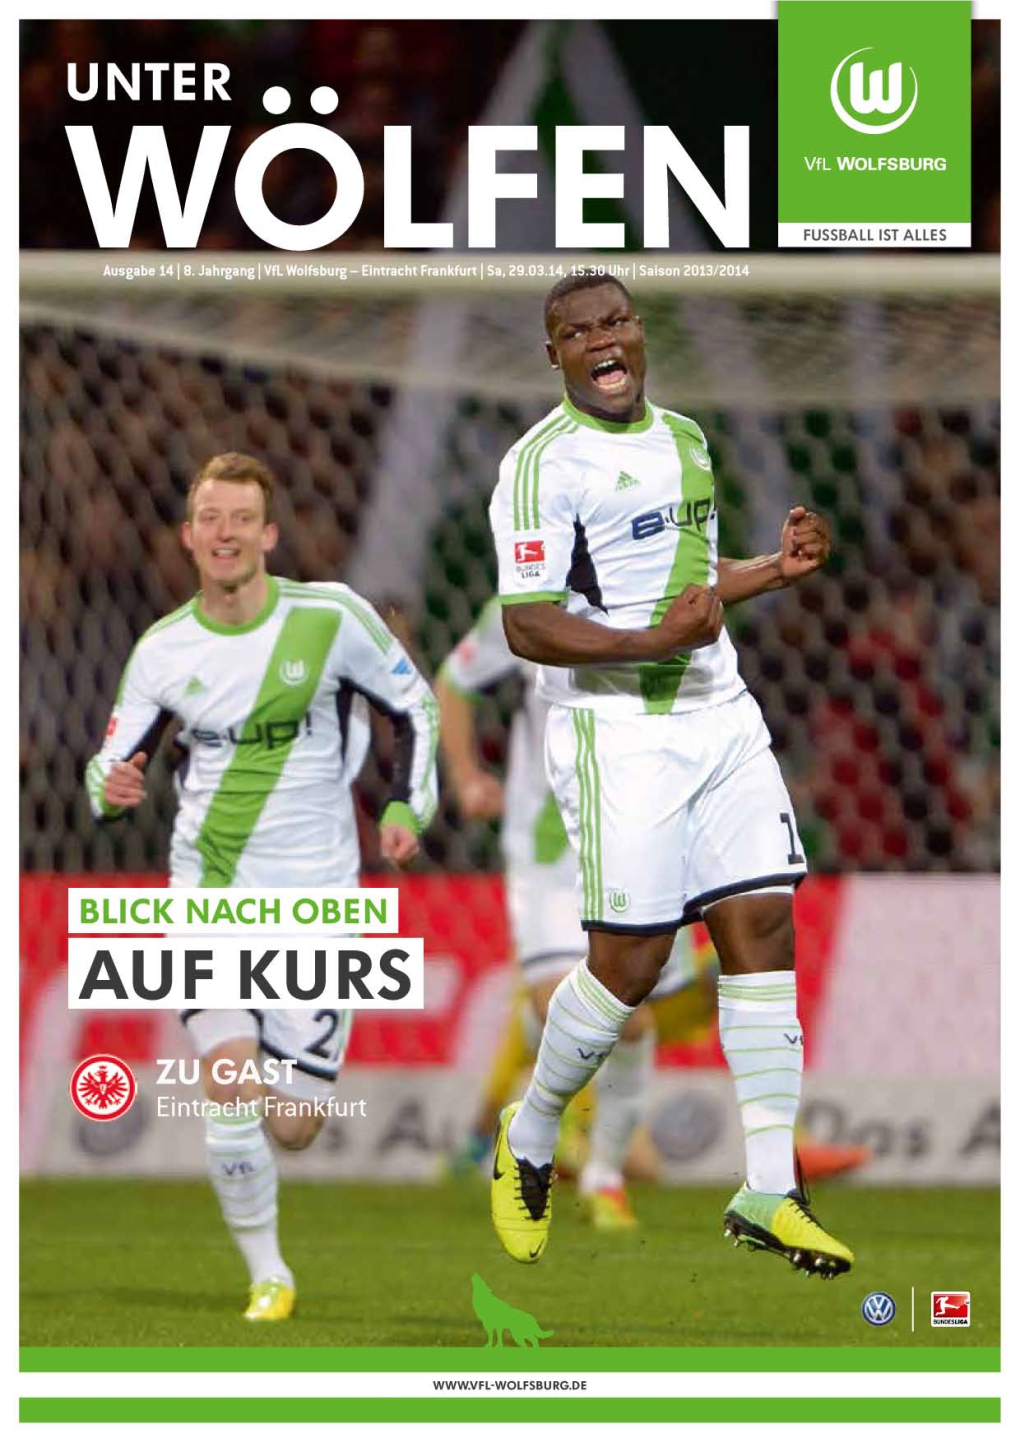 Des Vfl Wolfsburg Des Vfl Wolfsburg Des Vfl Wolfsburg